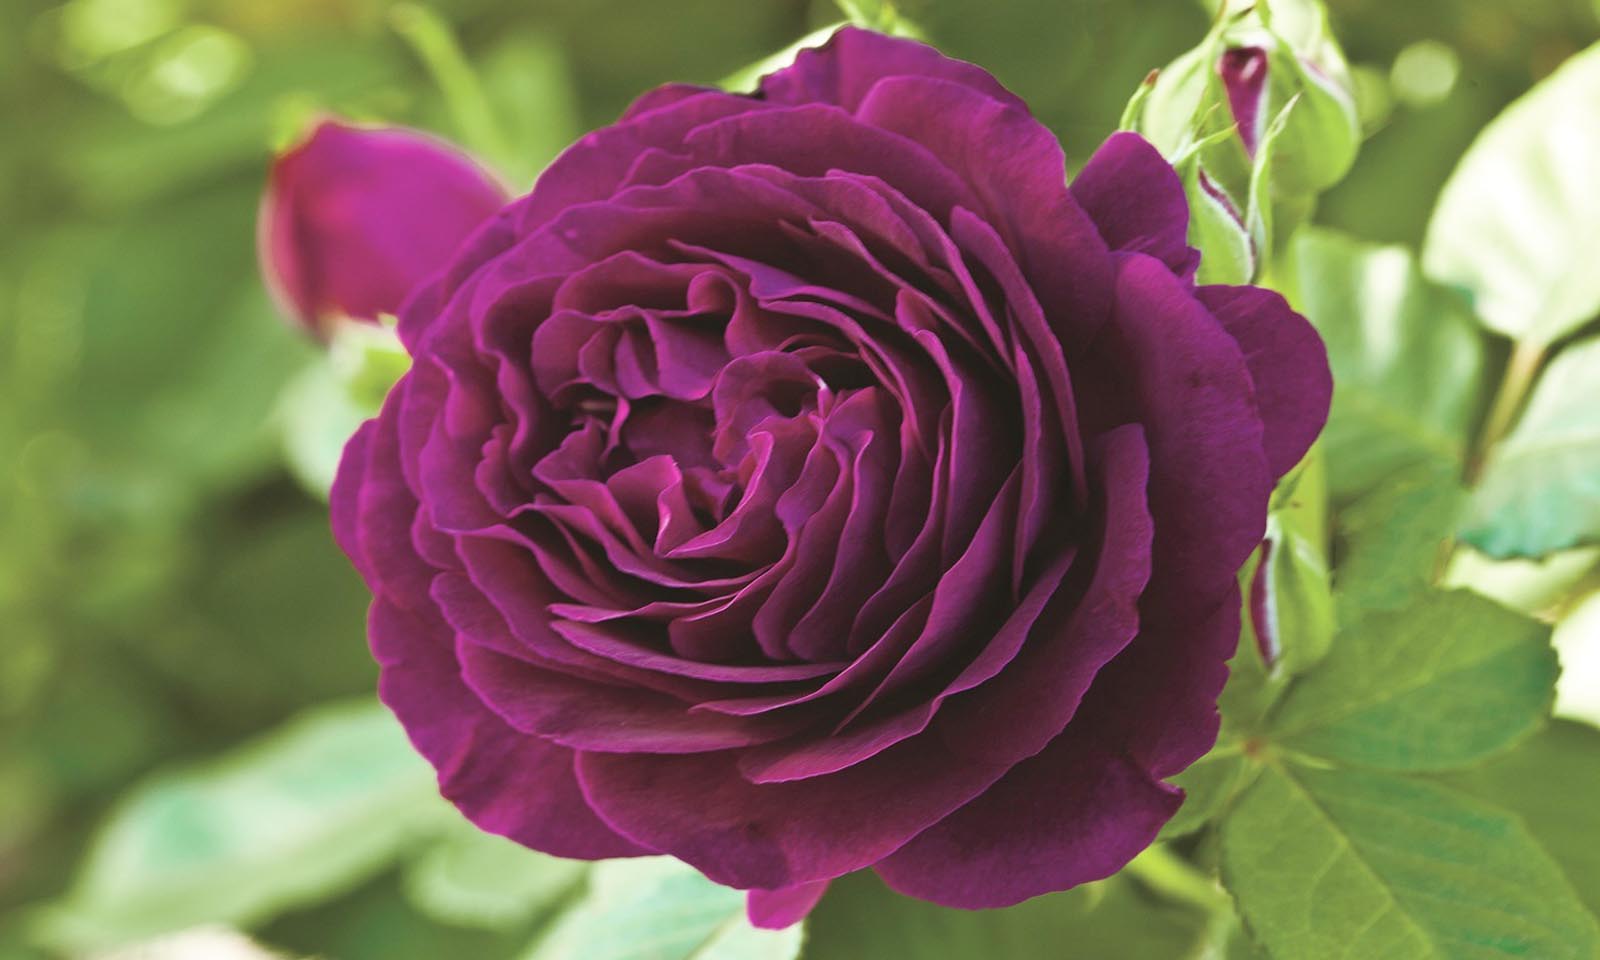 ROSE TWILIGHT 40cm  Wholesale Dutch Flowers & Florist Supplies UK